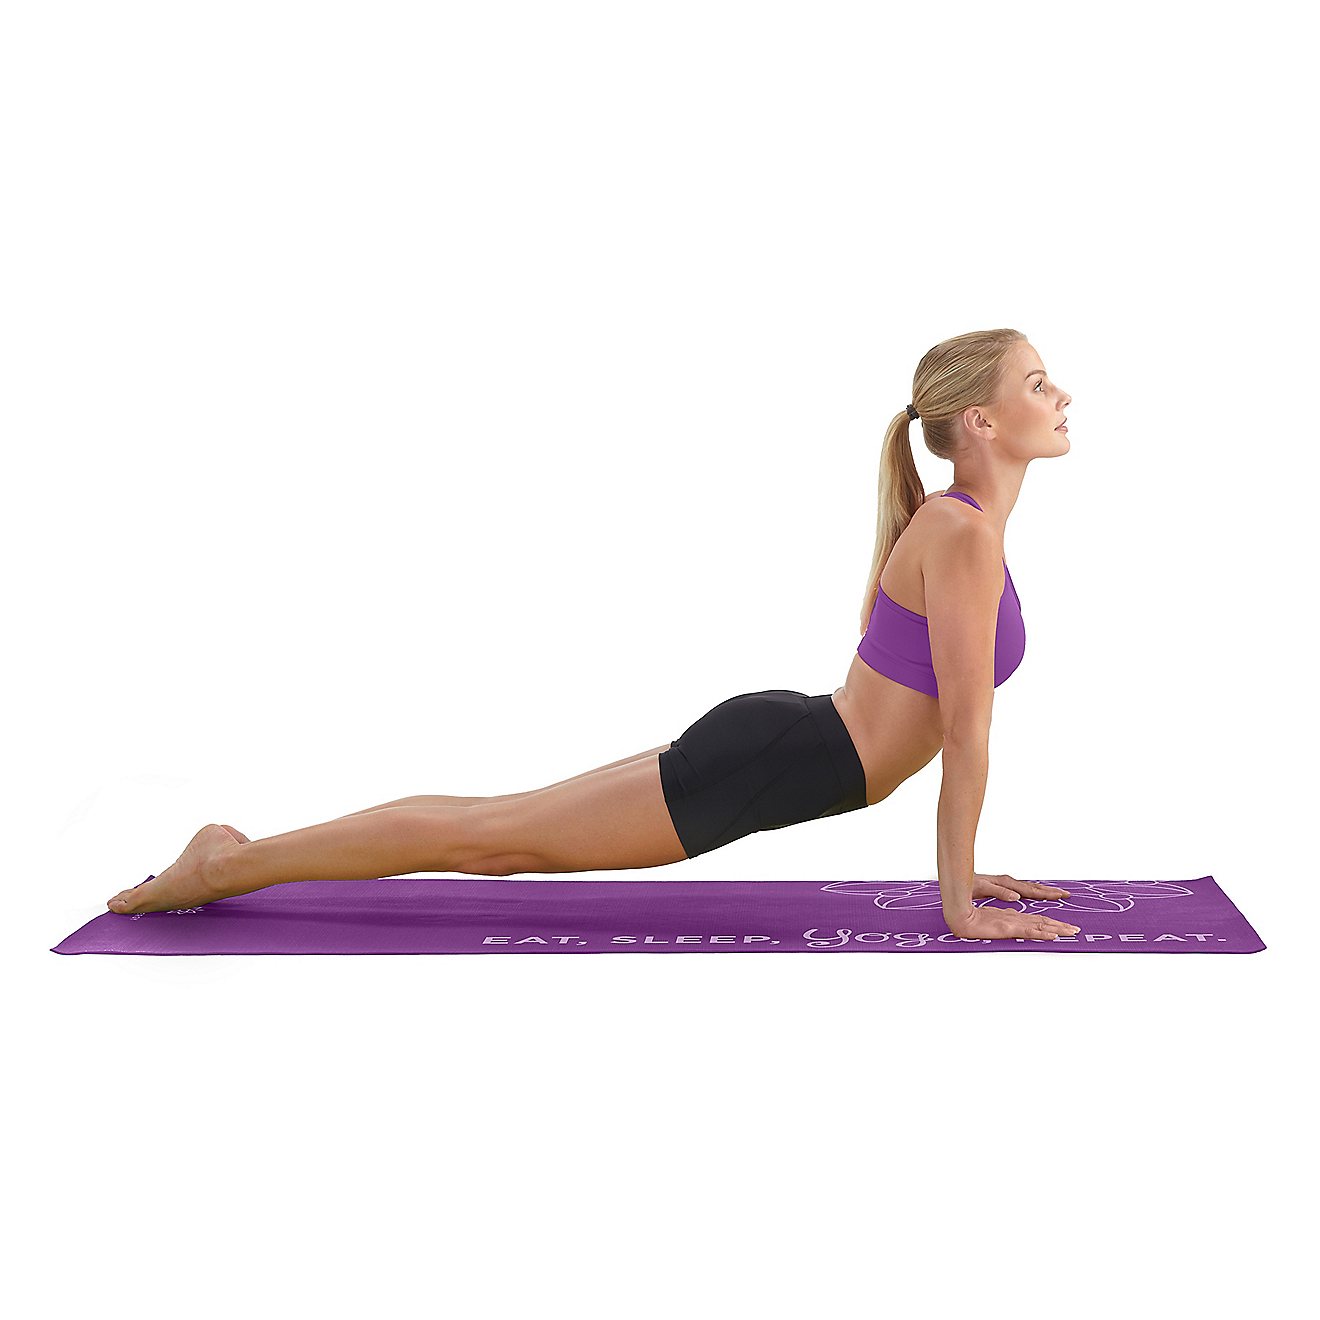 Life Energy Yoga Repeat 4 mm Premium TPE EkoSmart Yoga Mat                                                                       - view number 3